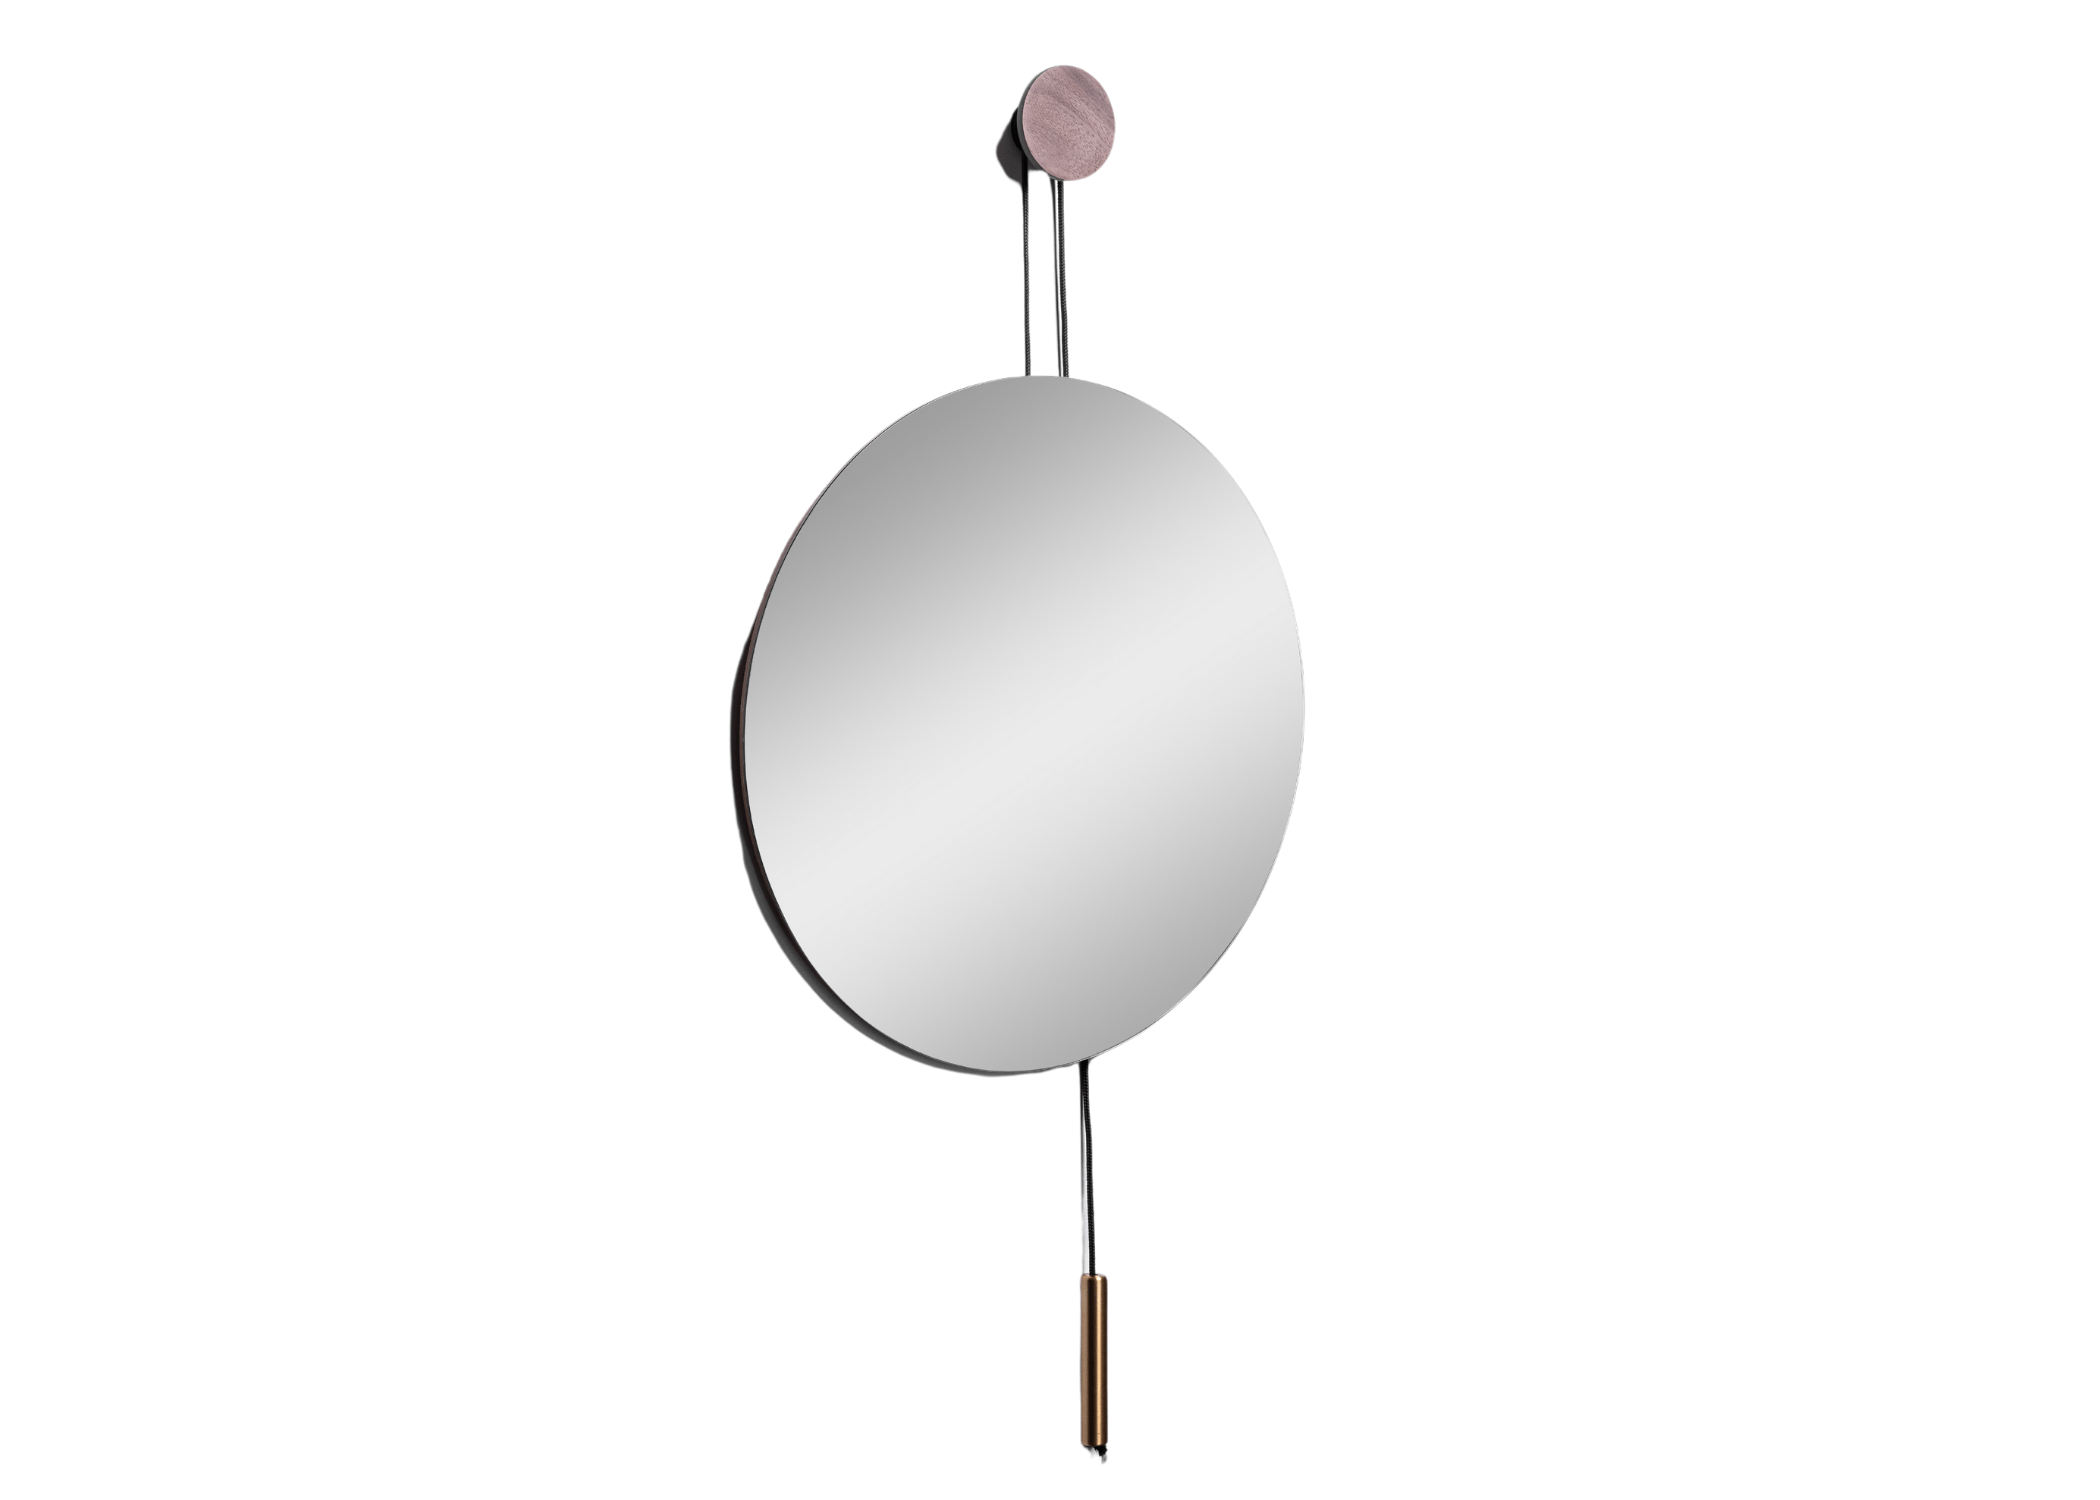 Espelho Eros: Design arredondado e detalhe em pêndulo para um visual sofisticado.